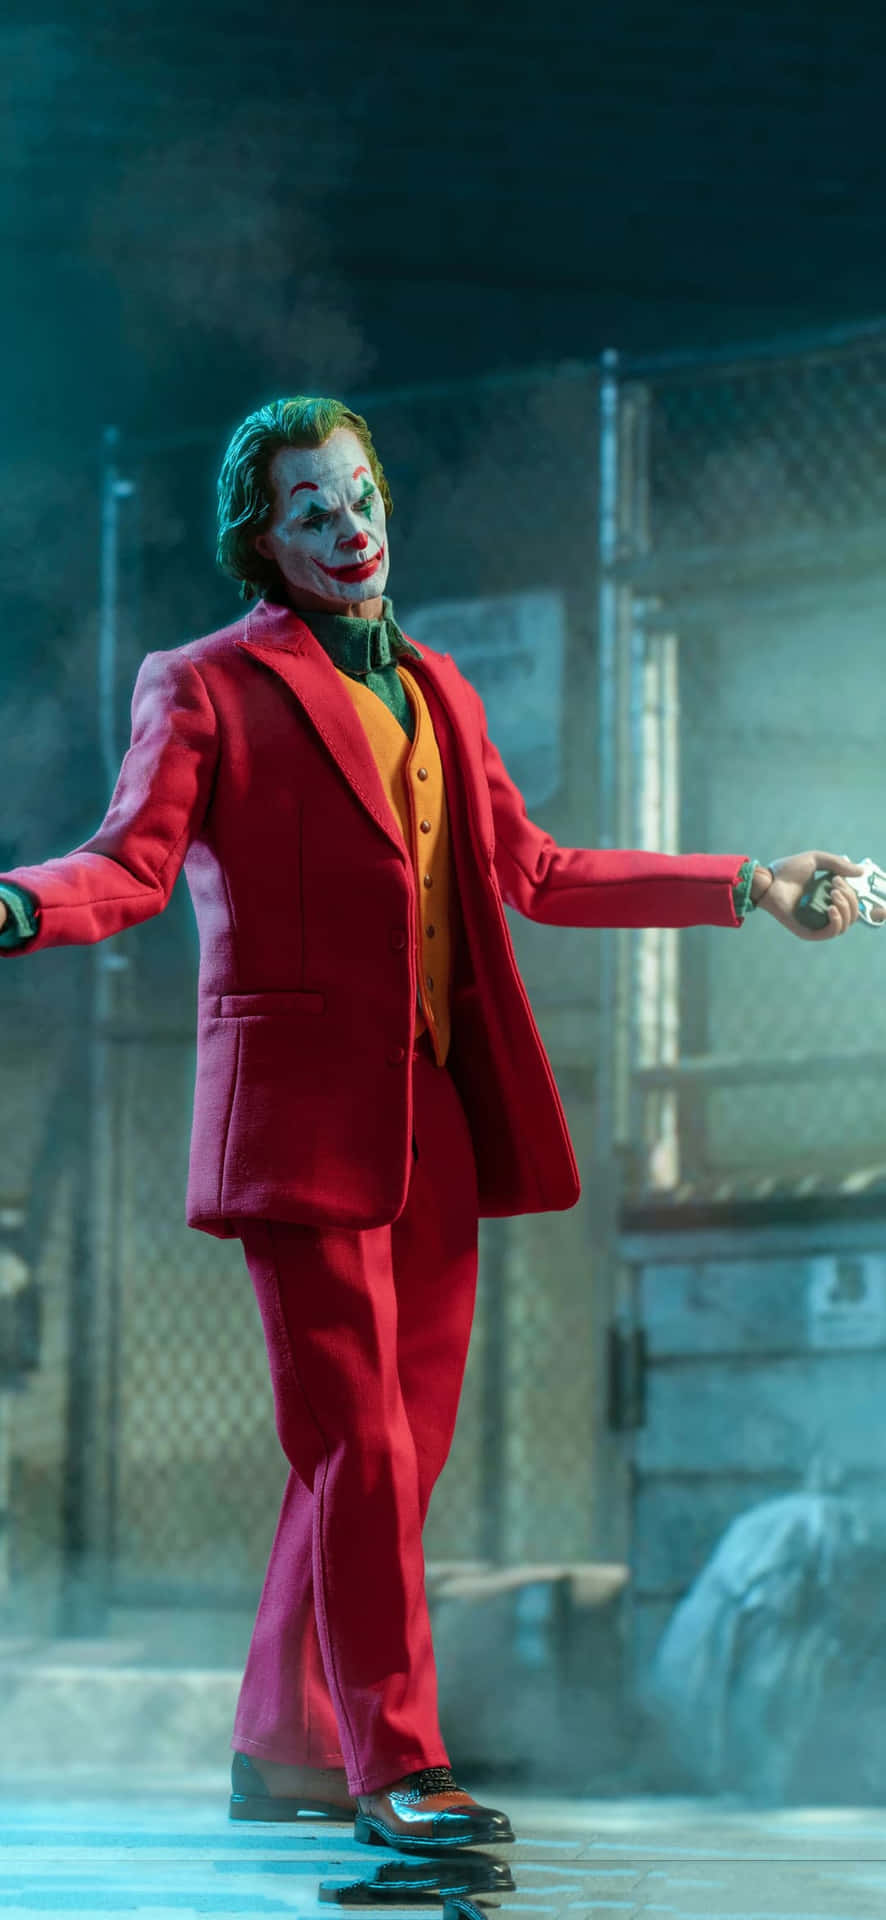 The Joker Is Holding A Gun And Is Holding A Gun Wallpaper